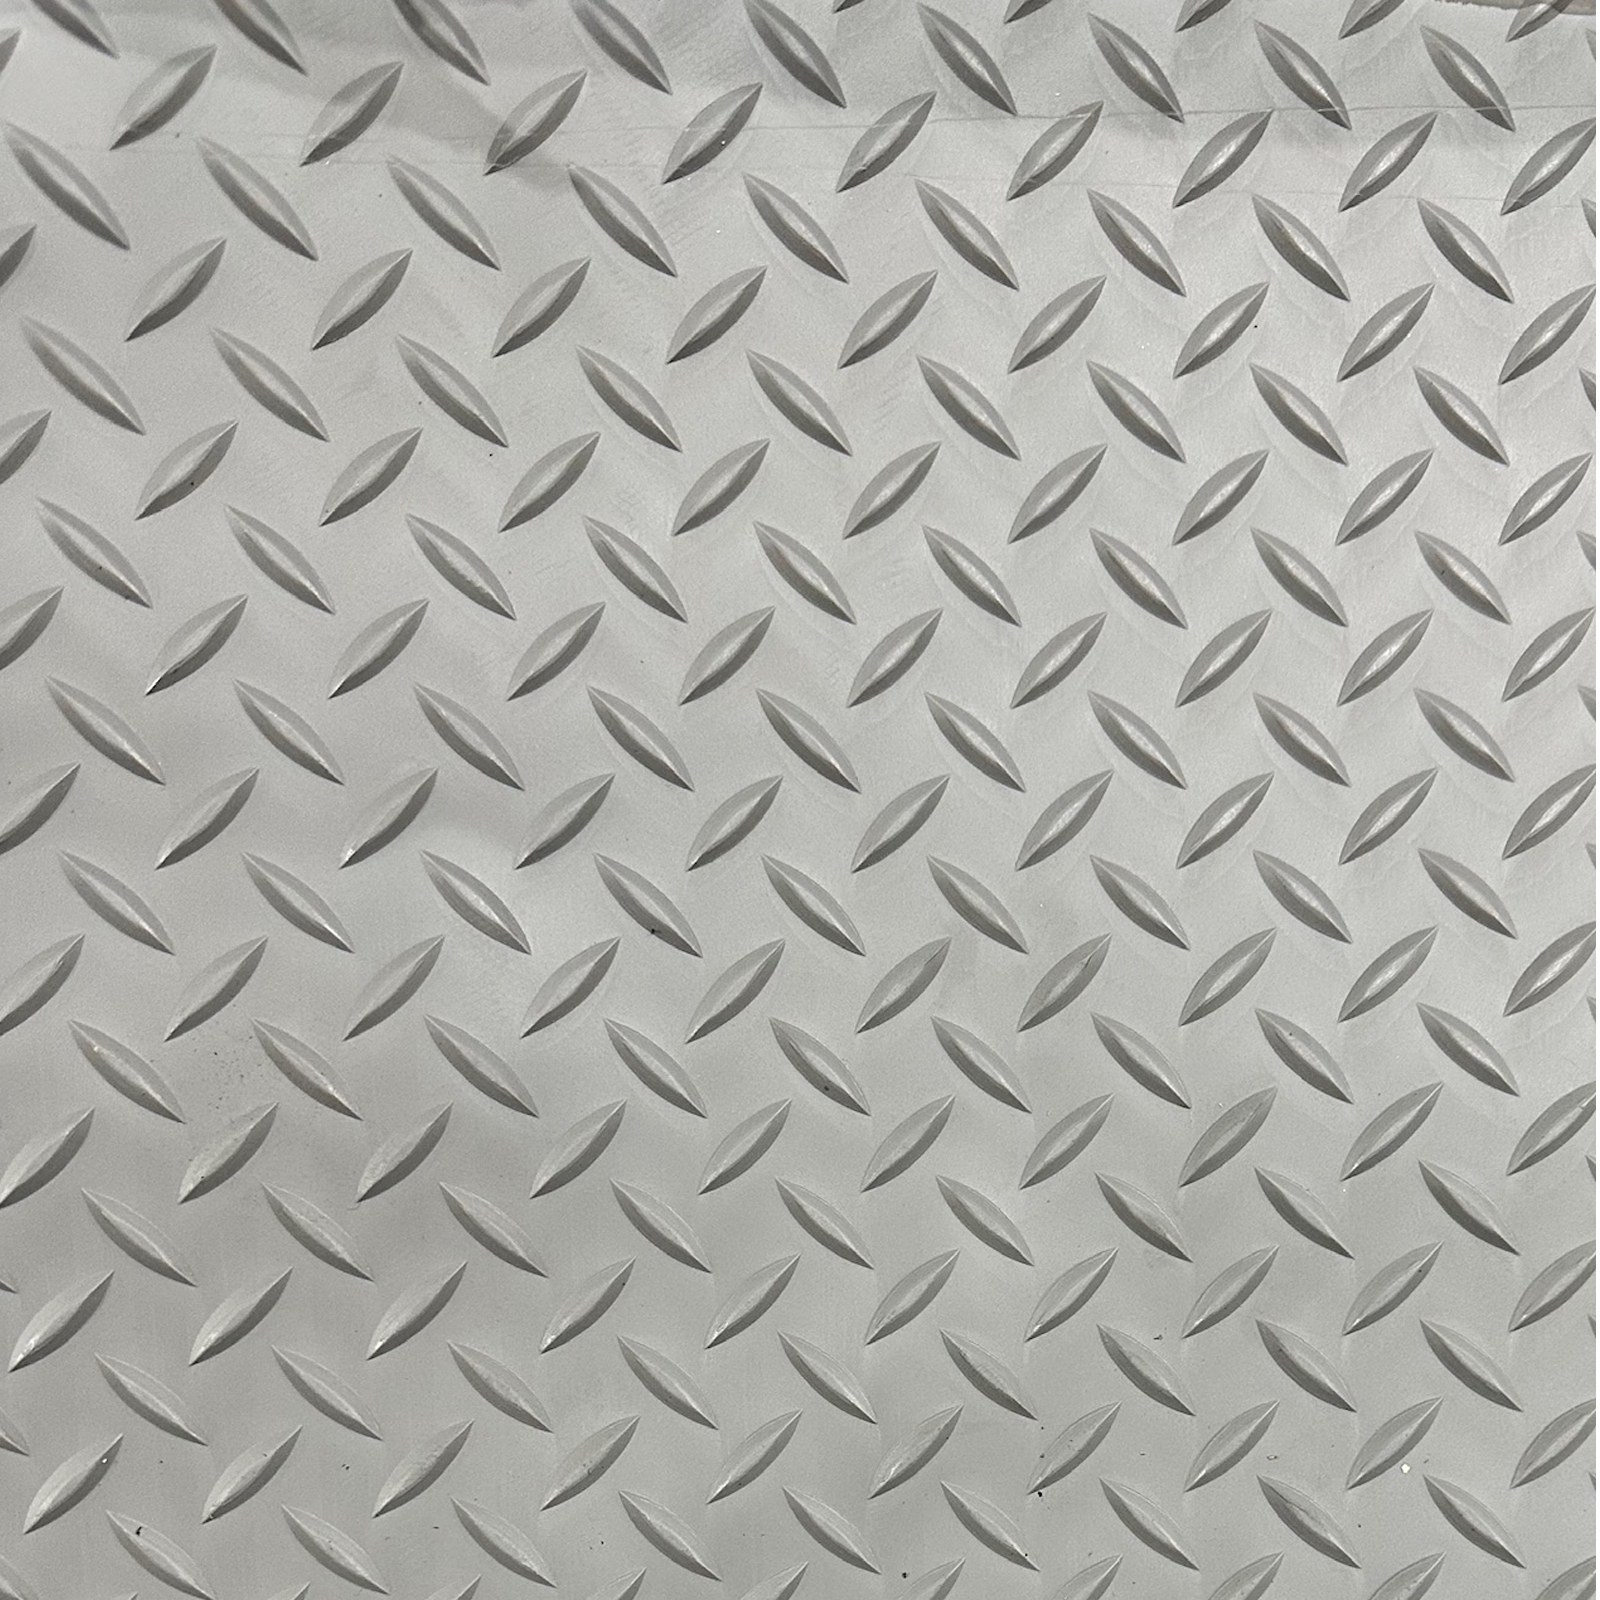 Diamond mat rubber 3mm x 1200mm wide grey